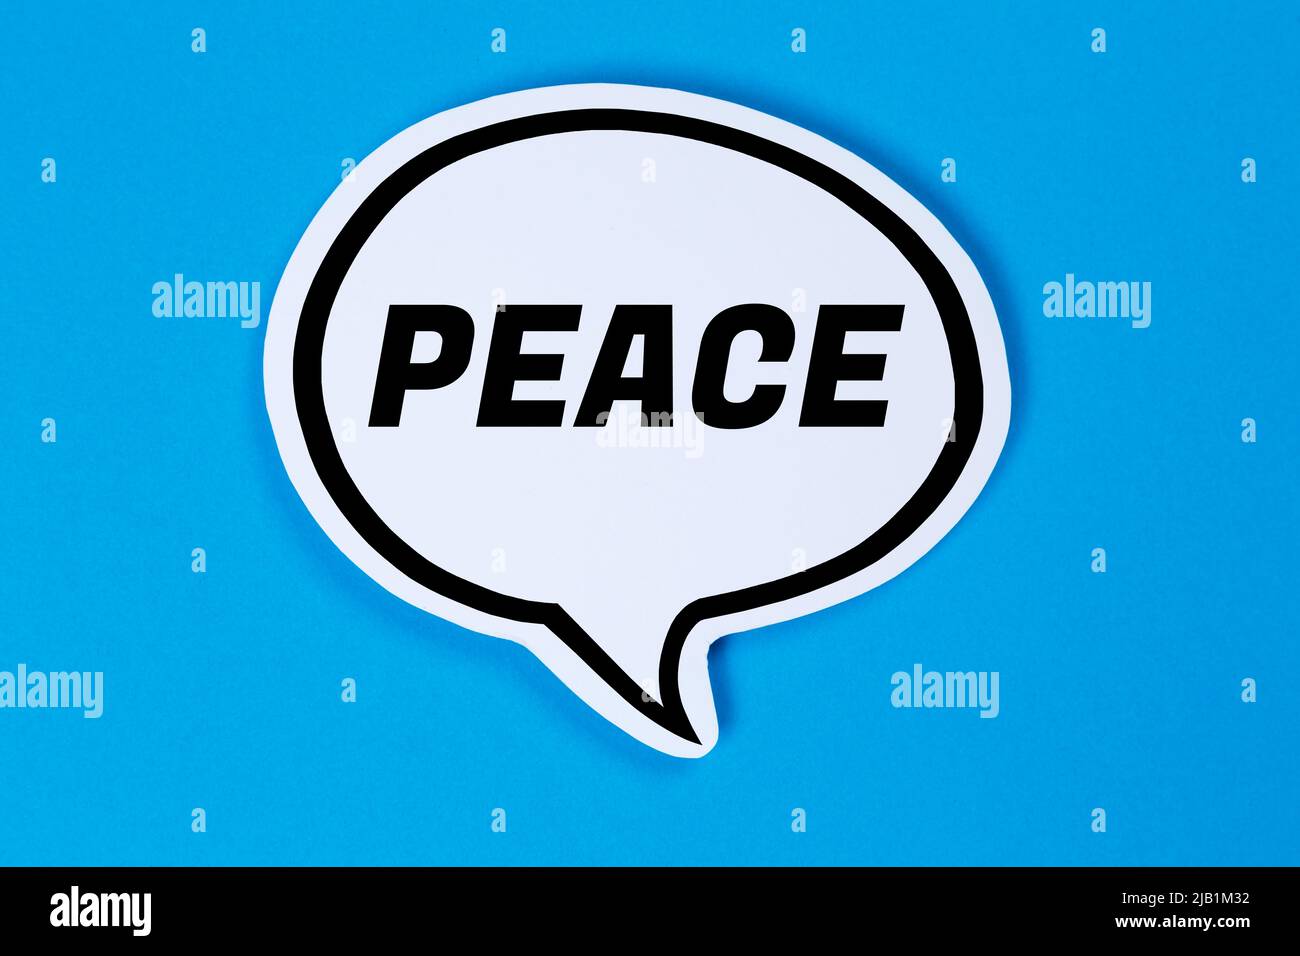 Discurso de paz burbuja concepto de comunicación hablar decir hablar decir Foto de stock